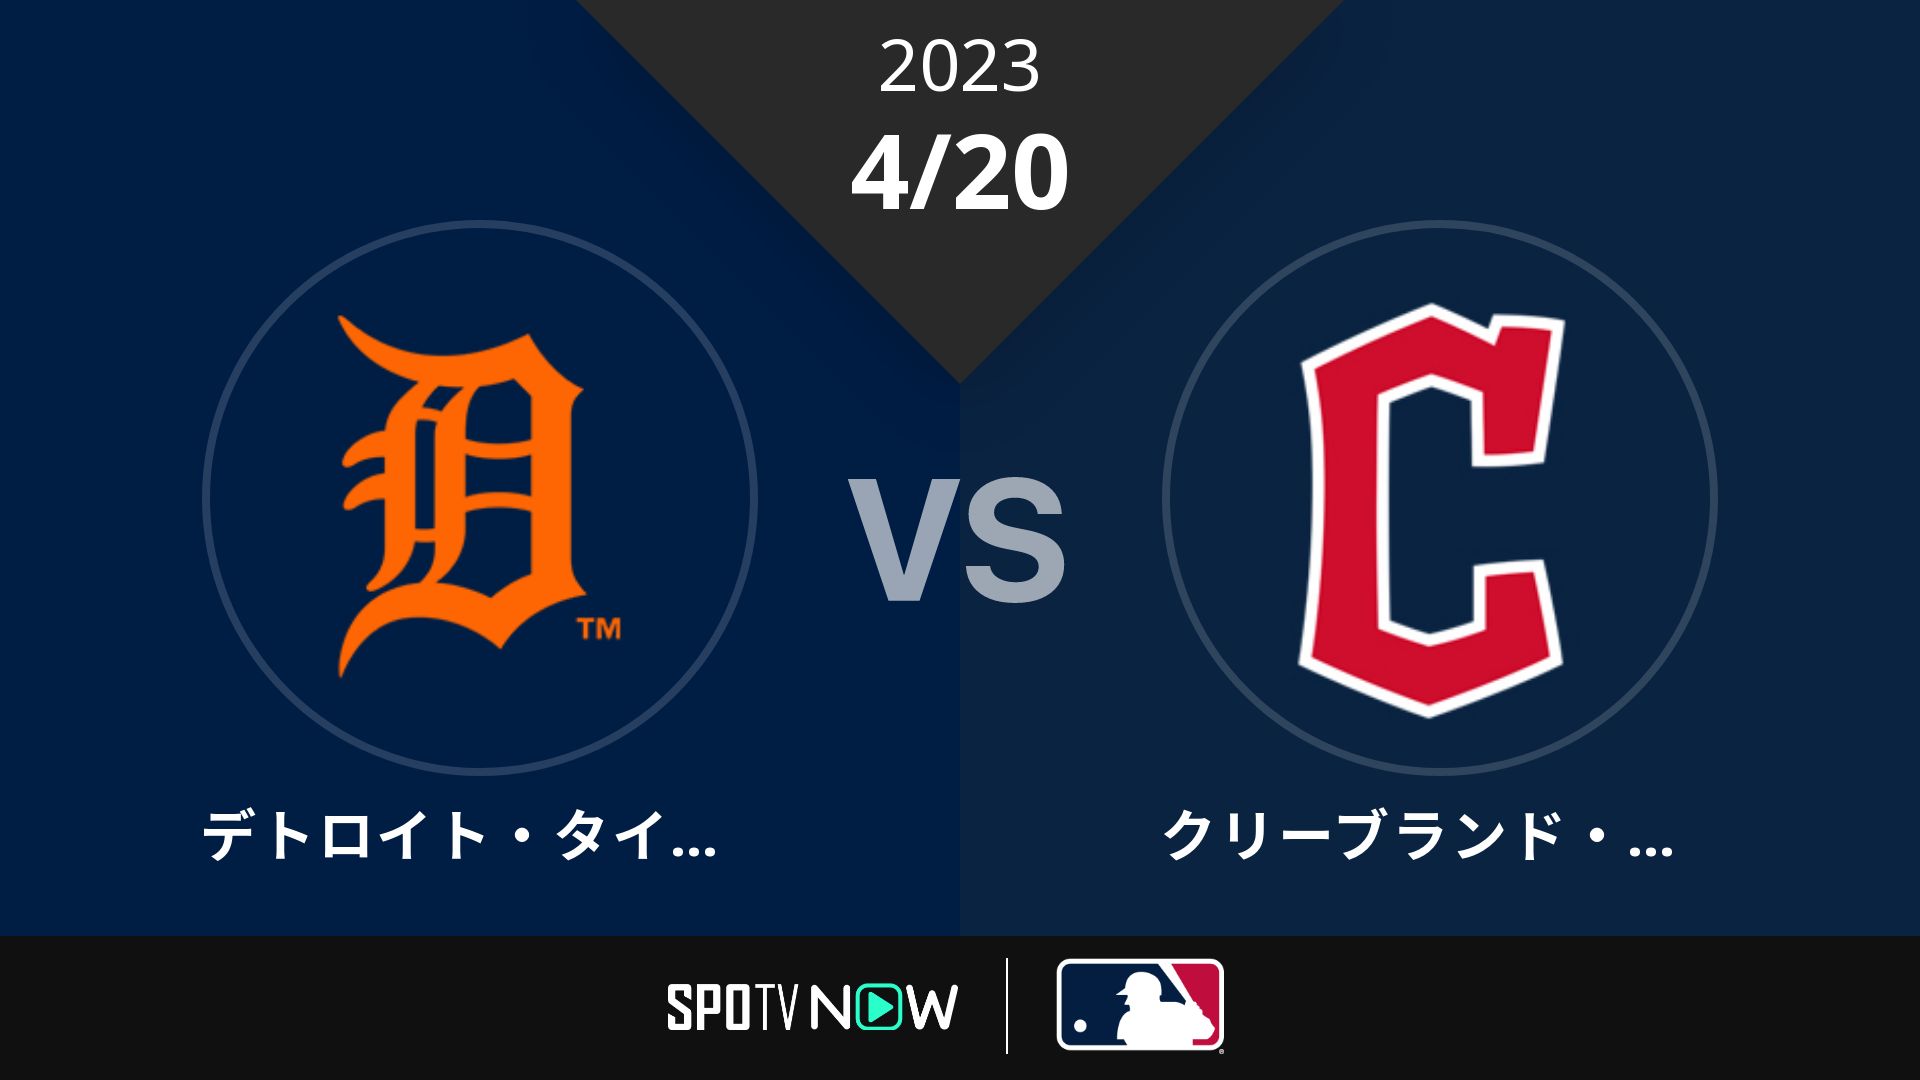 2023/4/20 タイガース vs ガーディアンズ [MLB]